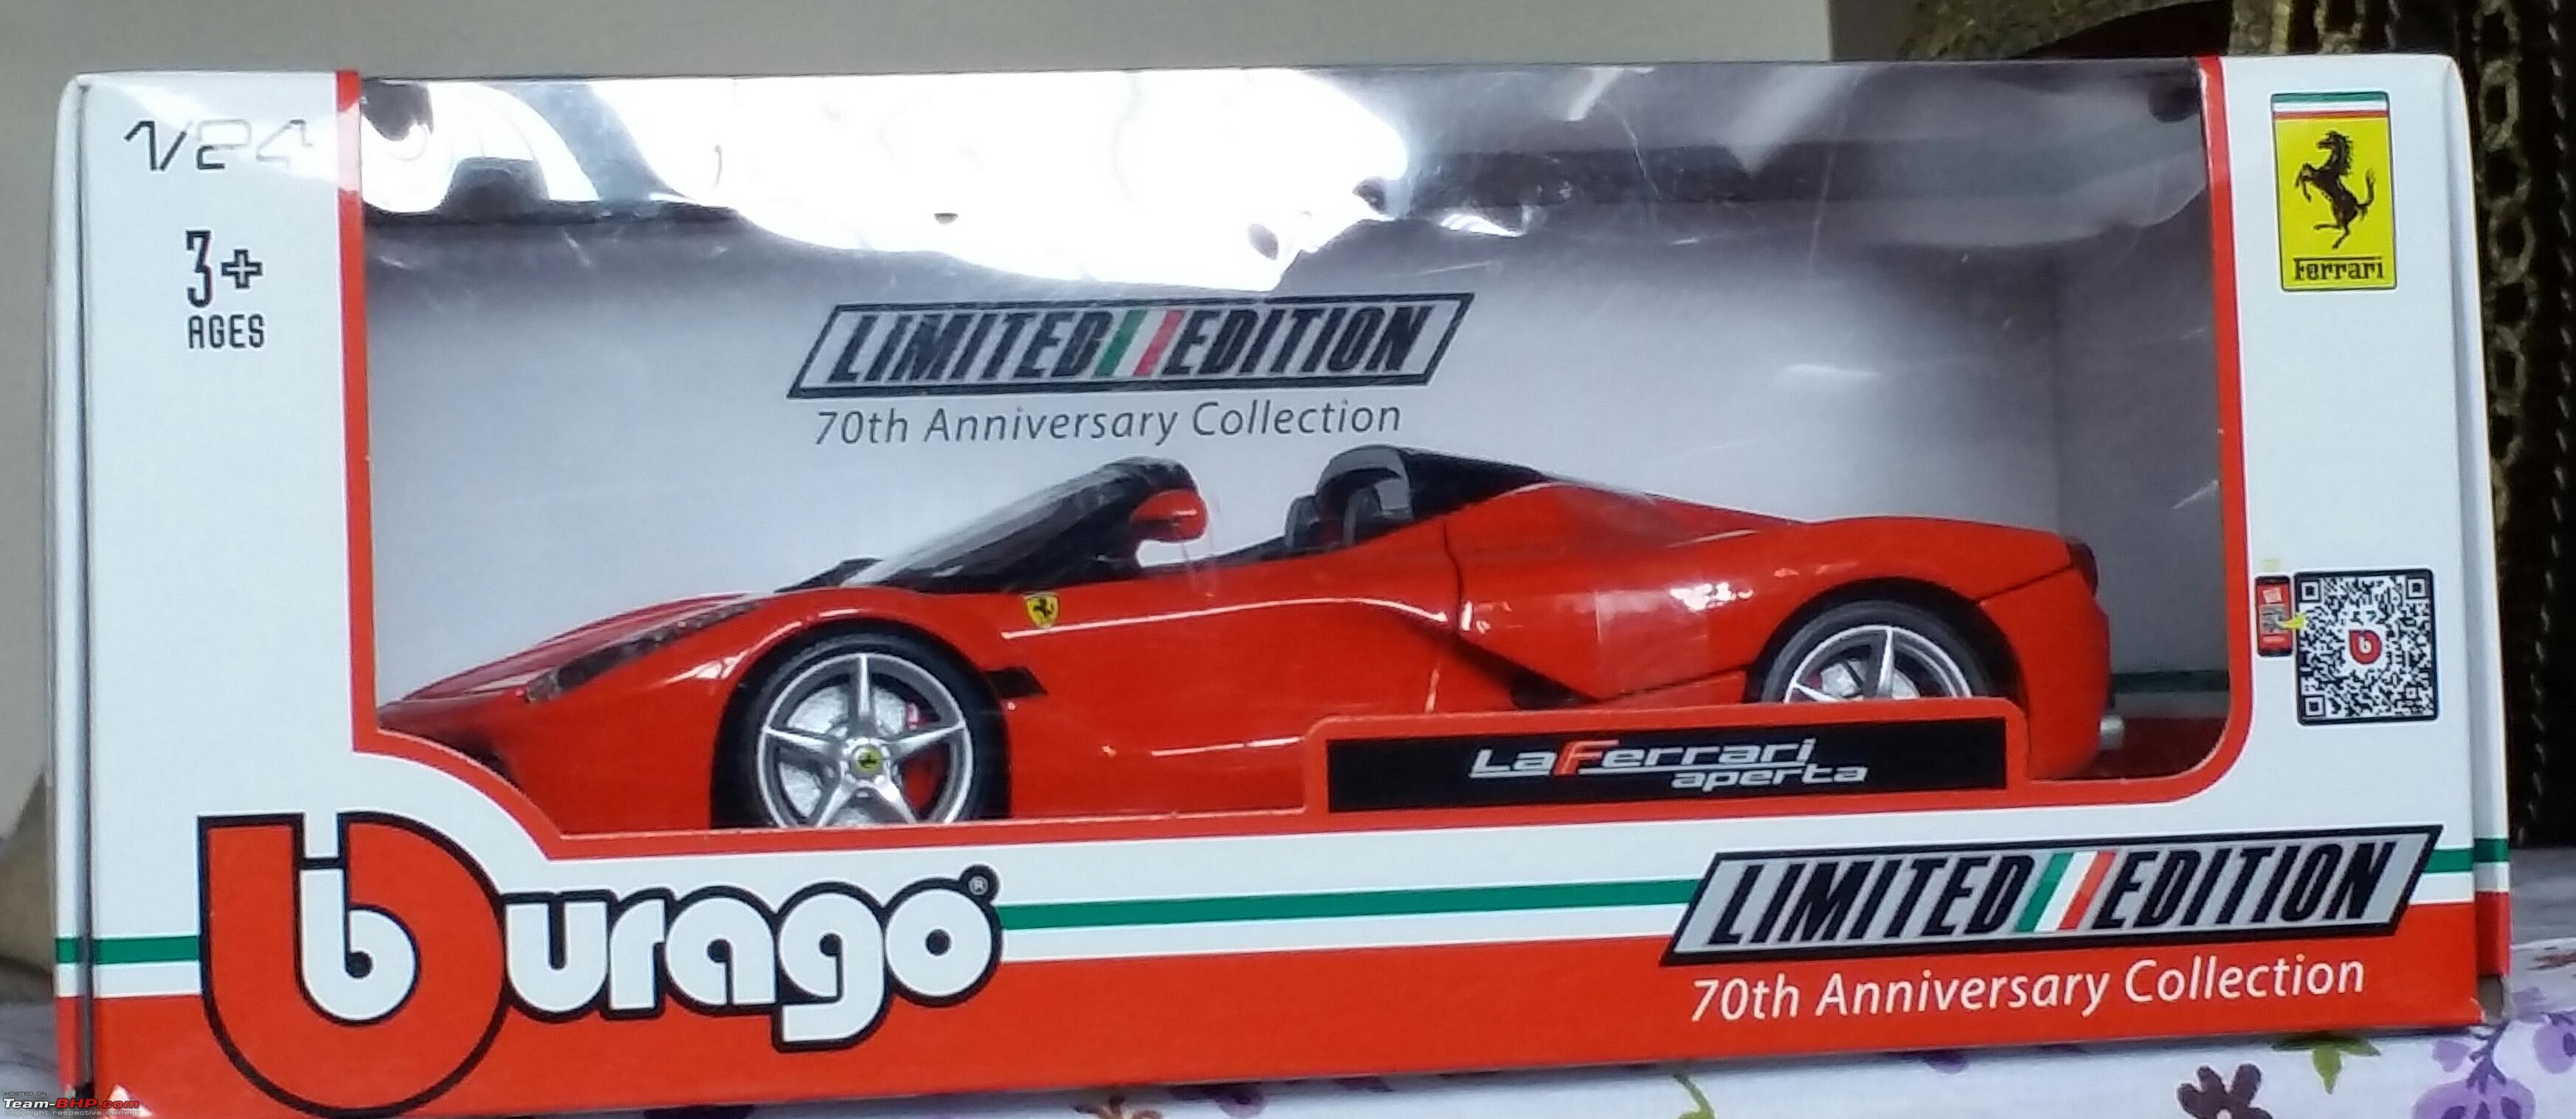 Bburago 1:24 Ferrari LaFerrari Aperta 70th Anniversary Collection